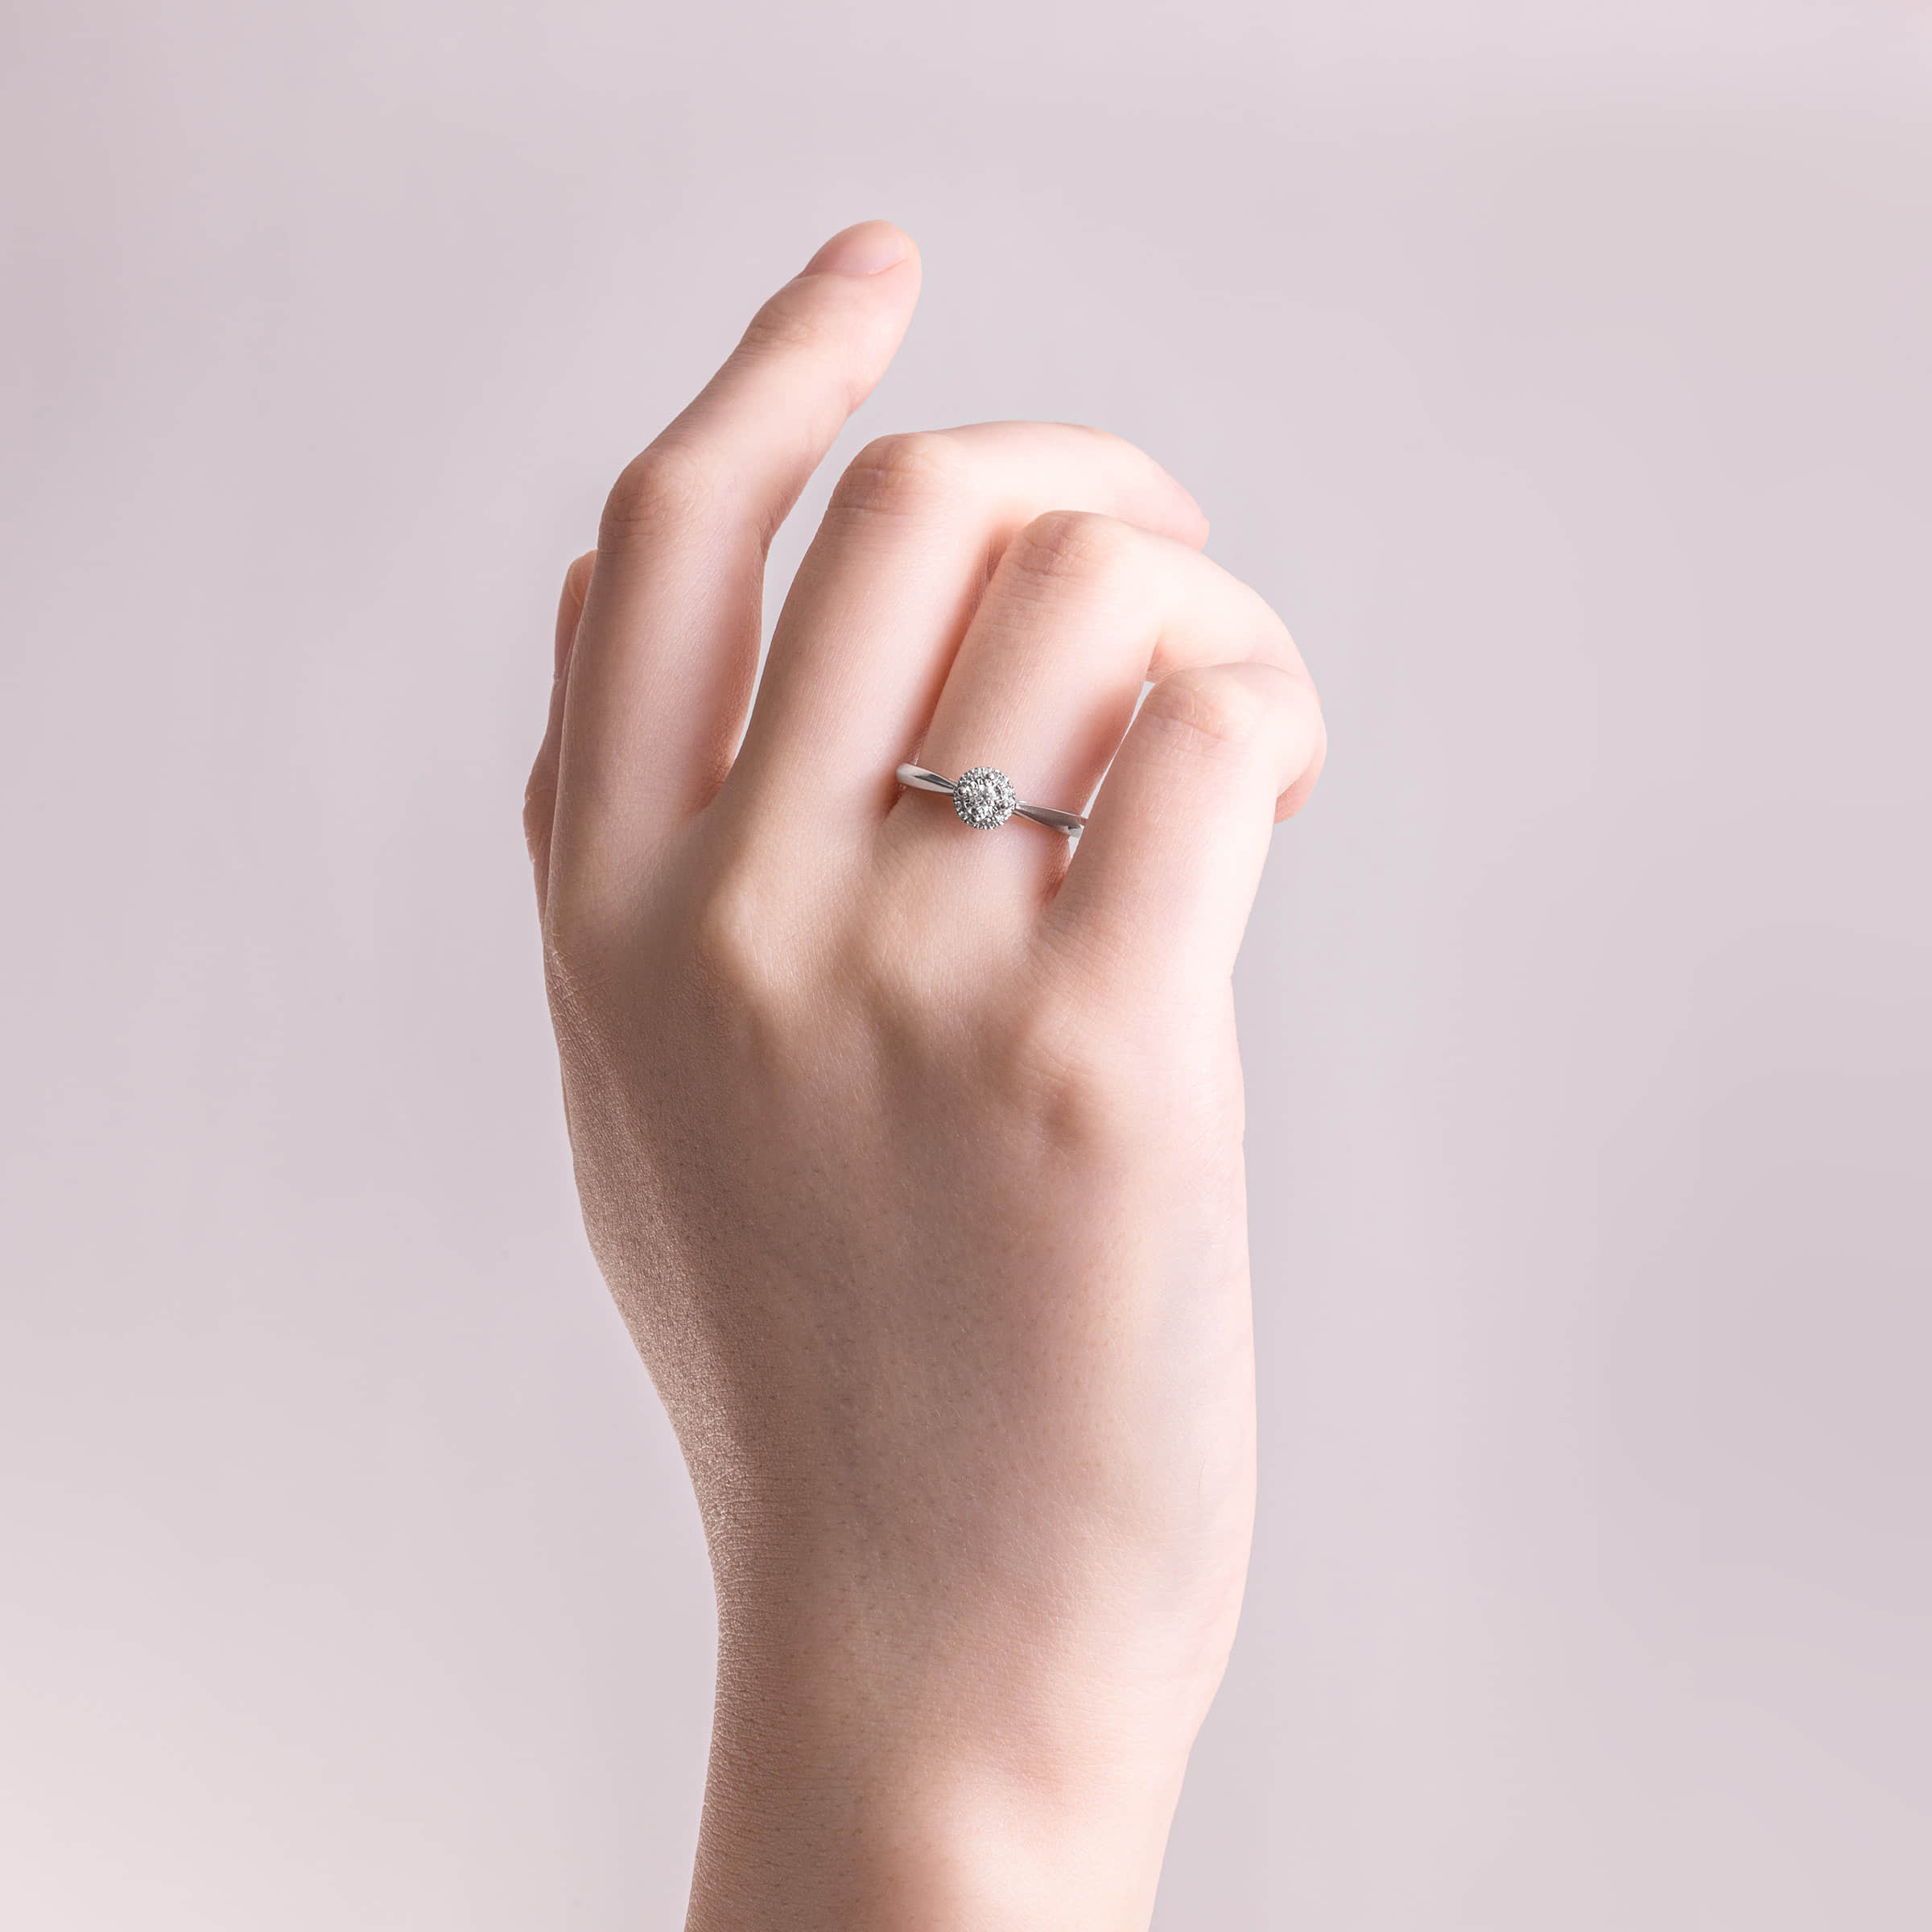 Darry Ring white gold promise ring on finger